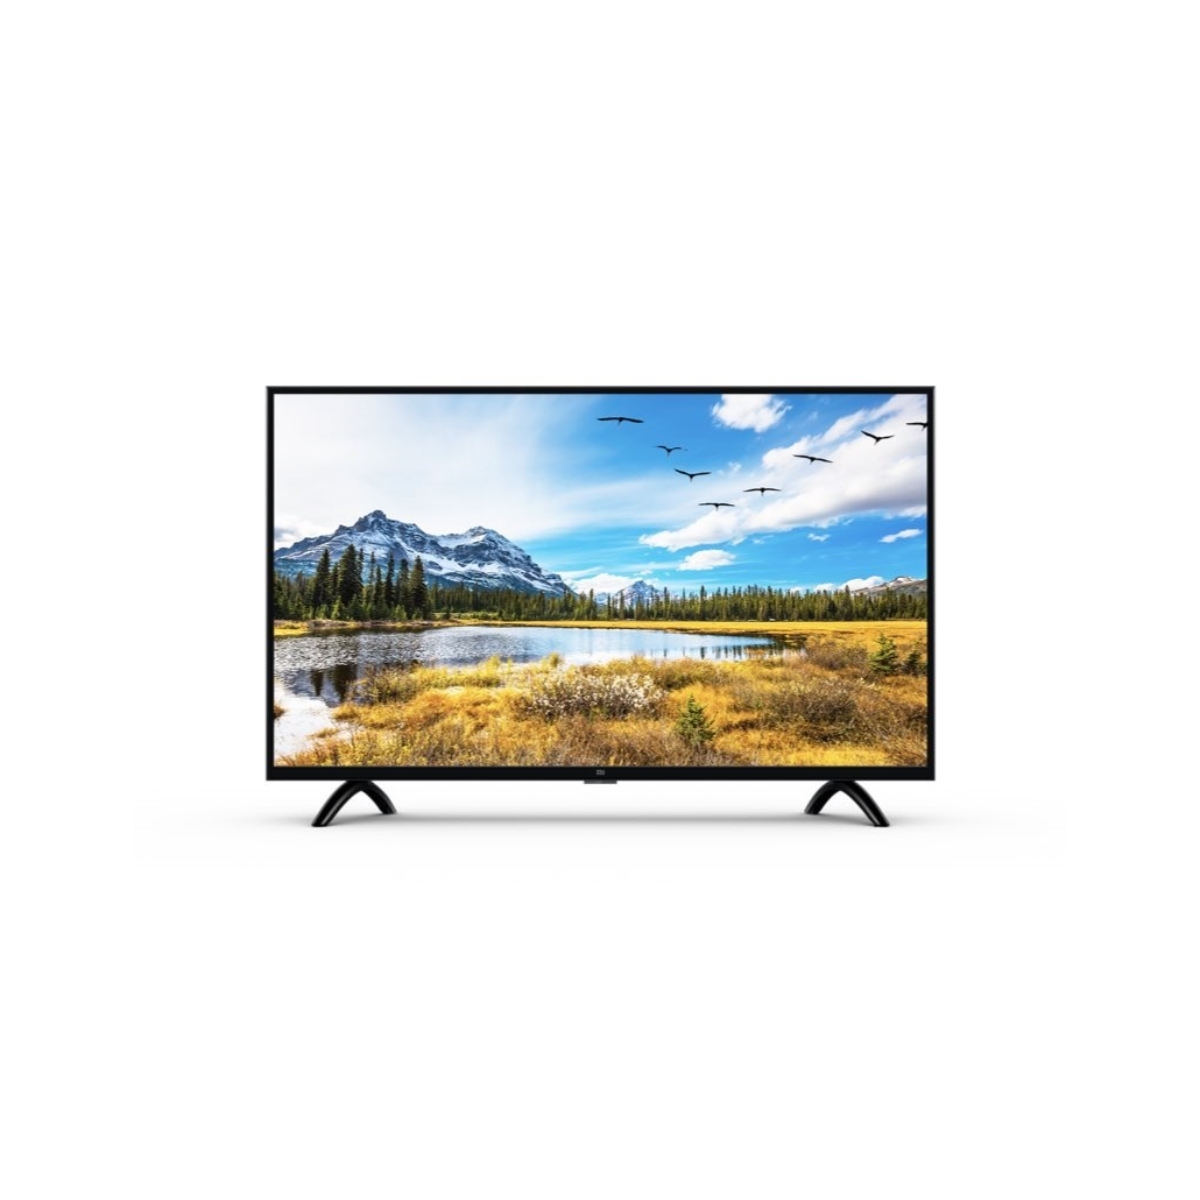 LED Smart TV 80 cm (32 inch) HD